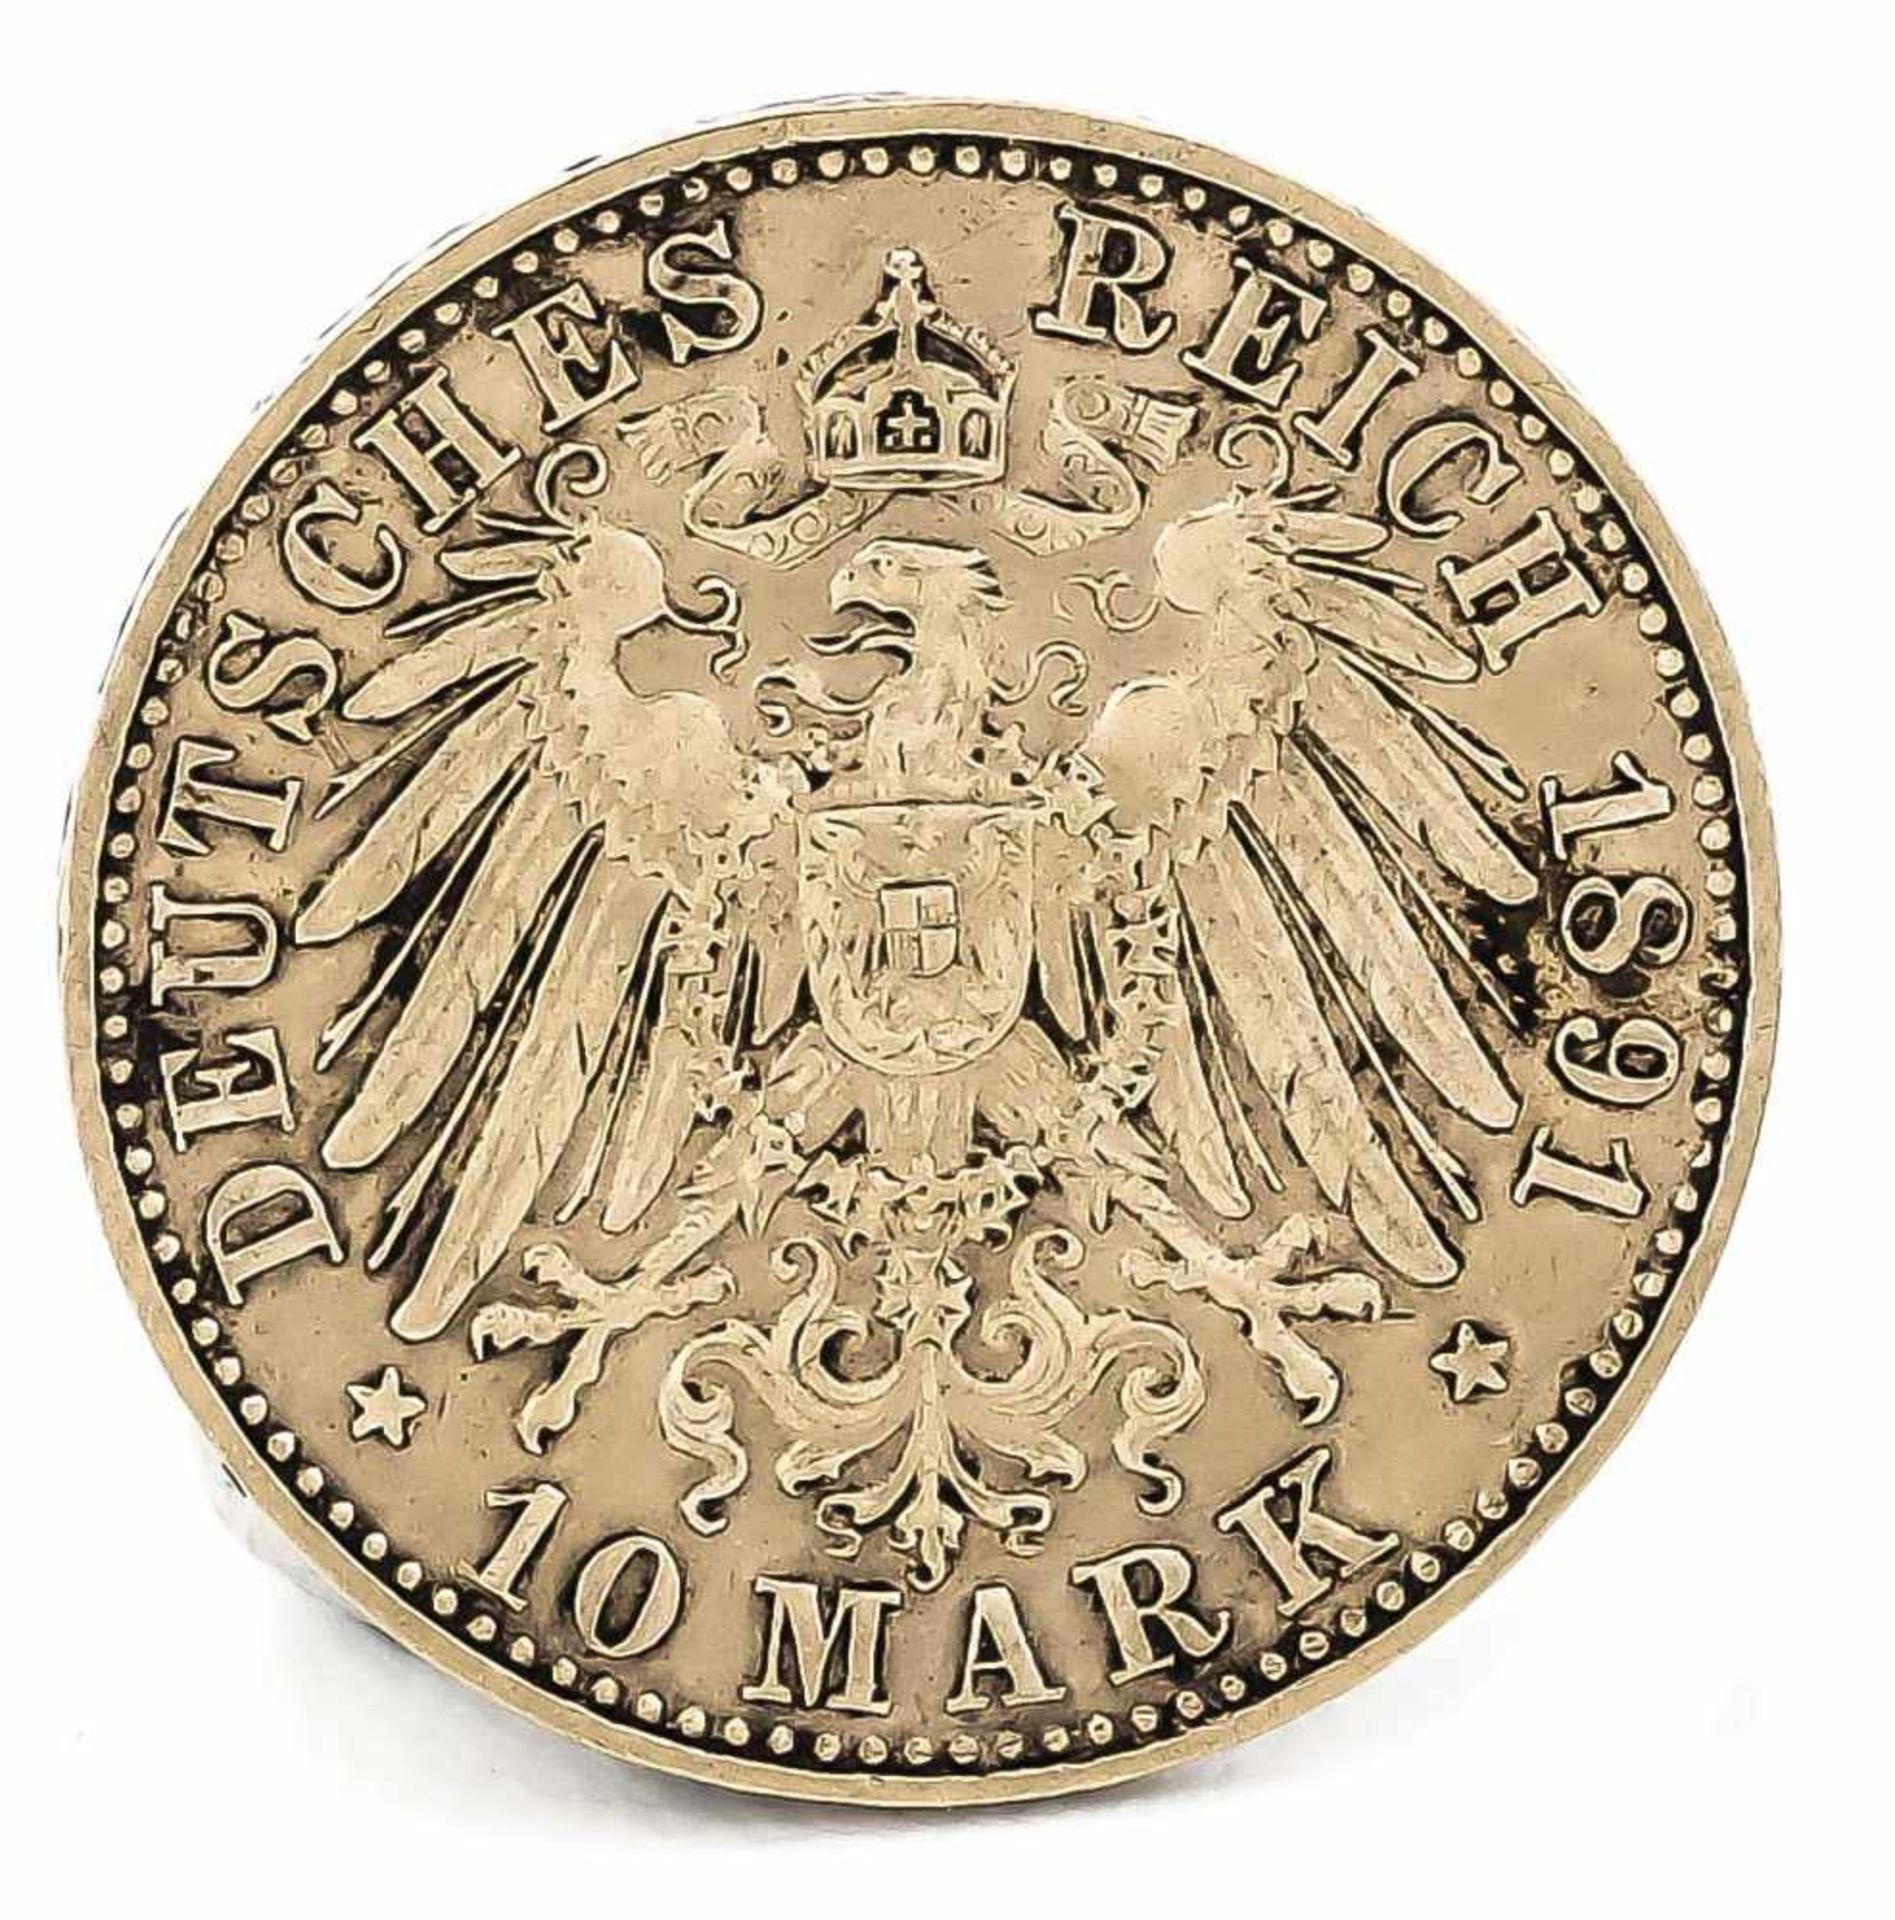 10 Mark, Sachsen, Albert König von Sachsen, 1891 E, in ss-vz - Bild 2 aus 2